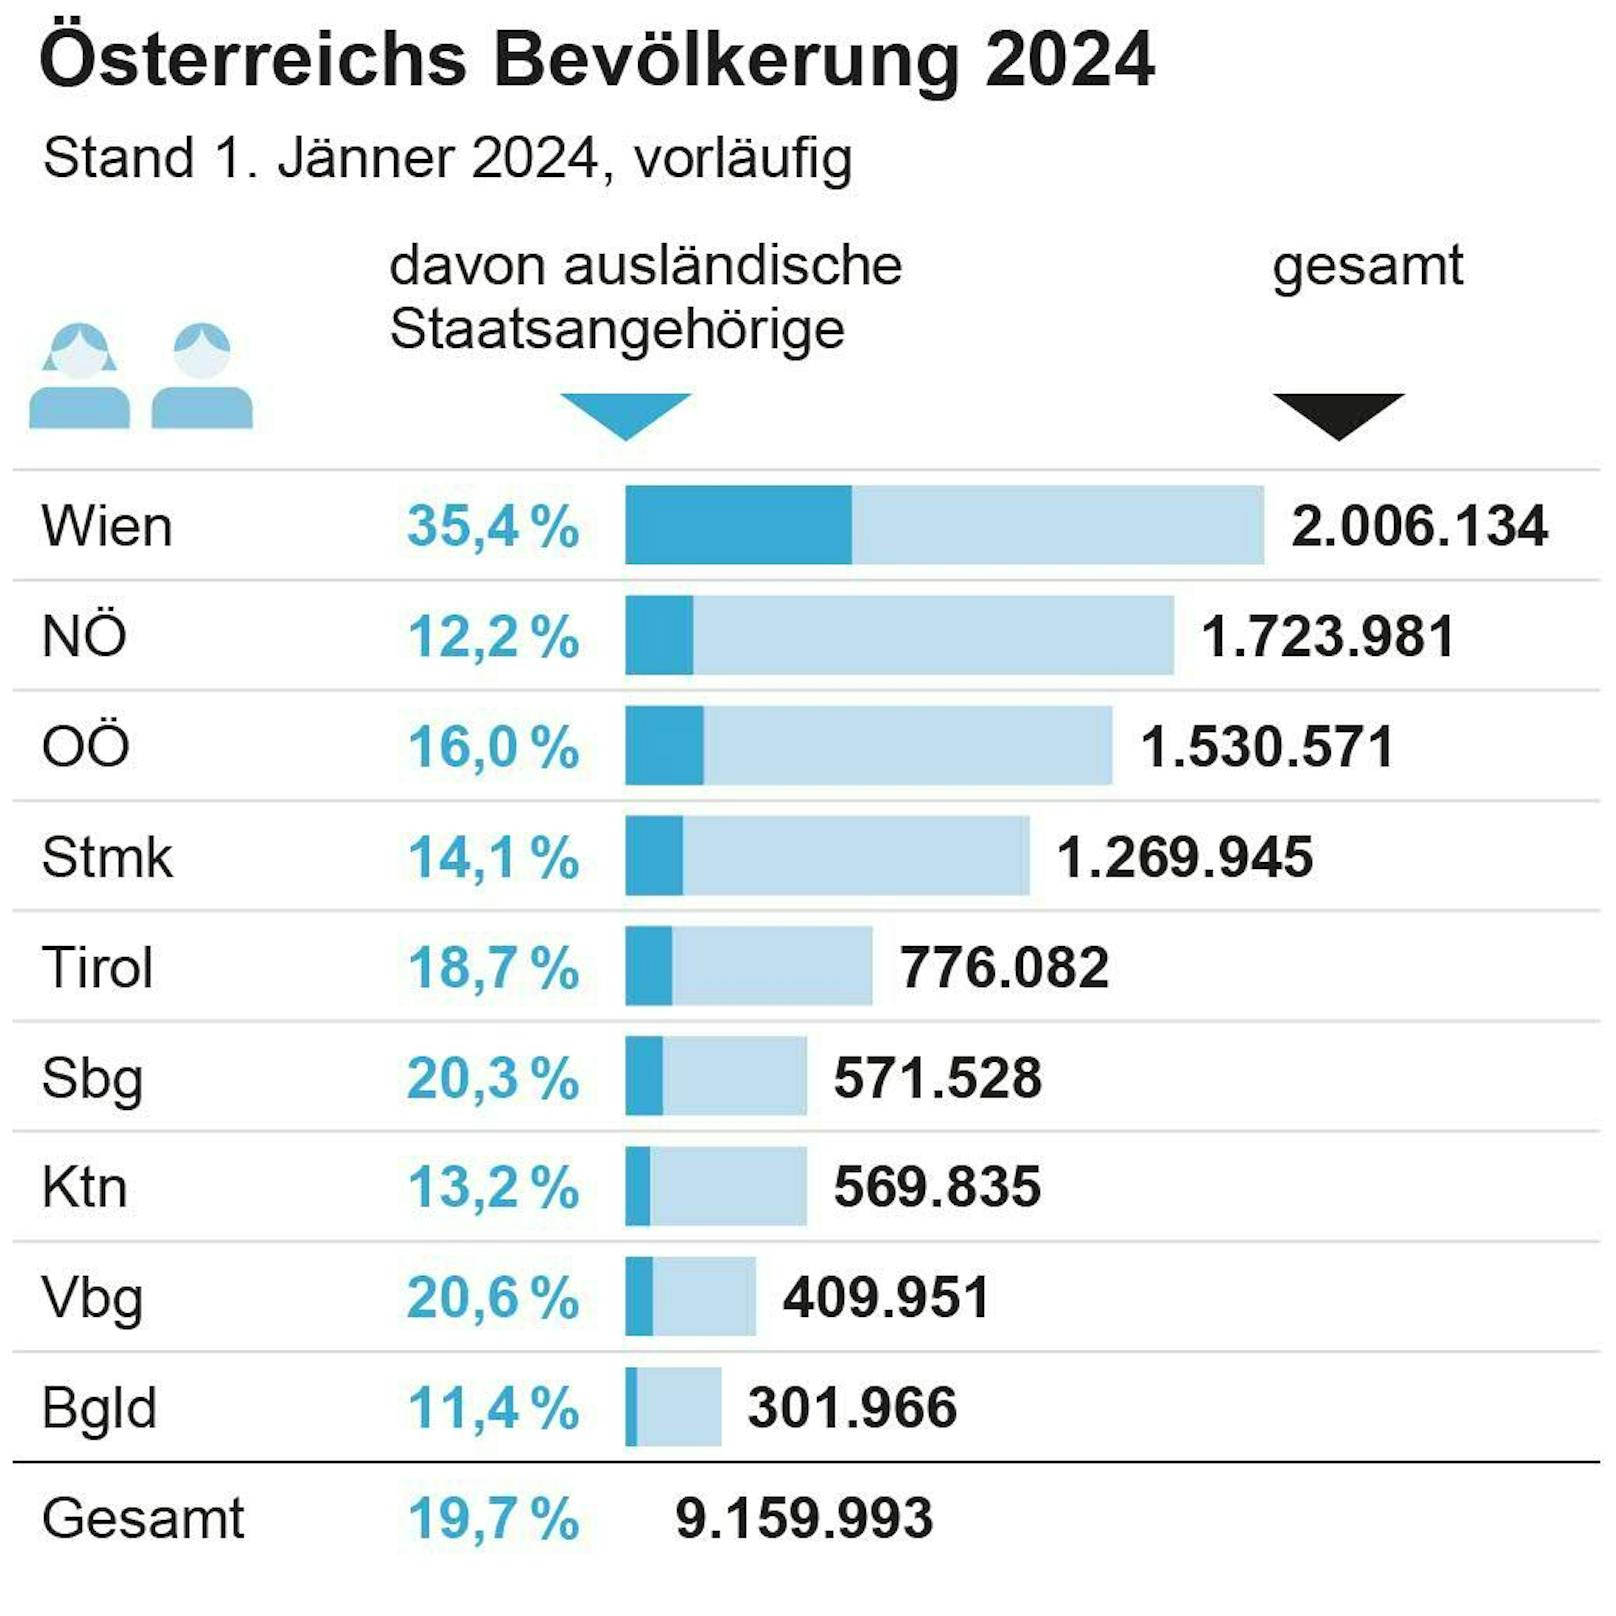 Einwohner nach Bundesländer Stand 1. Jänner 2024, Anteil ausländische Staatsangehörige in Prozent.